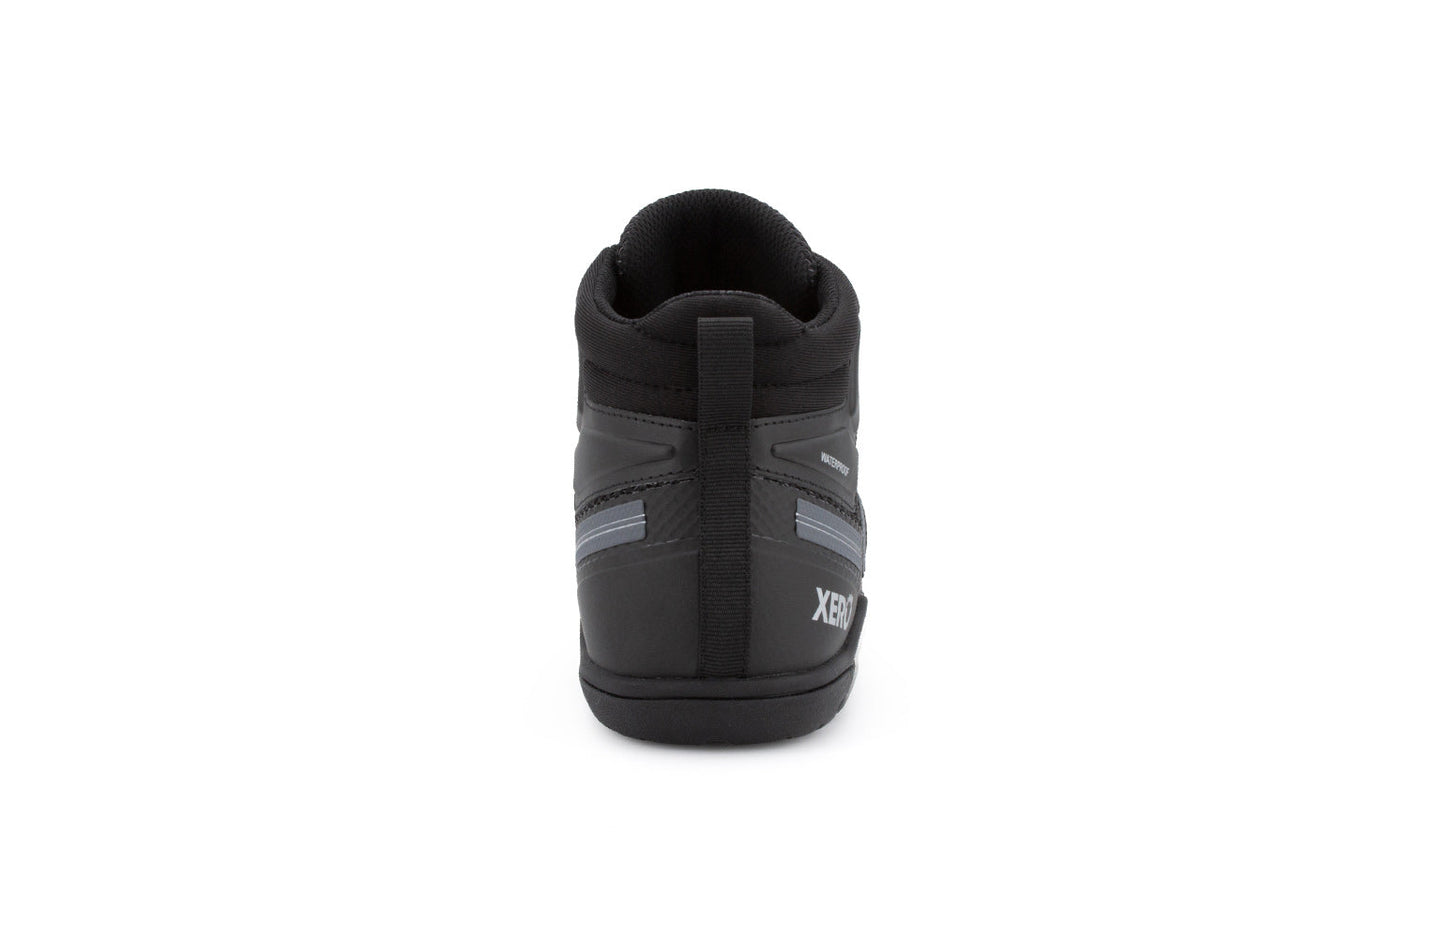 Xero Shoes Xcursion Fusion barfods støvler til mænd i farven black, bagfra